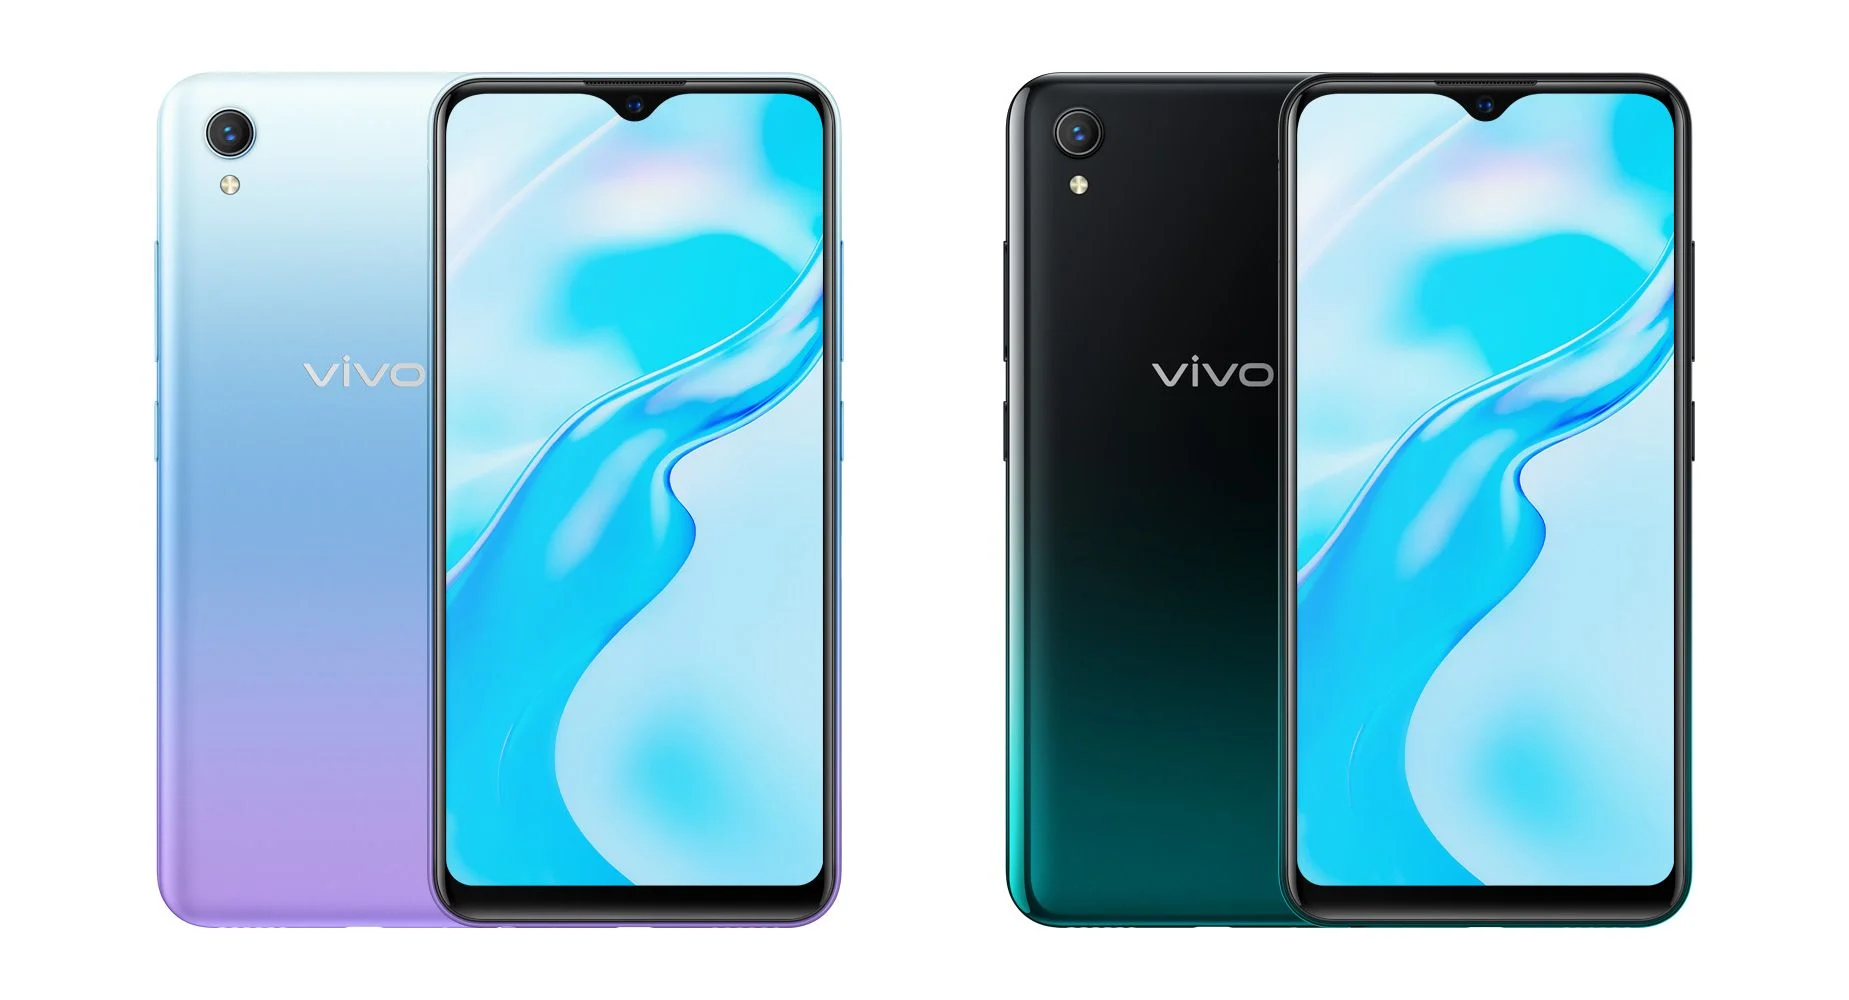 Vivo представила новый бюджетный смартфон — Vivo Y1s (vivo y1s in aurora blue and olive black colors)